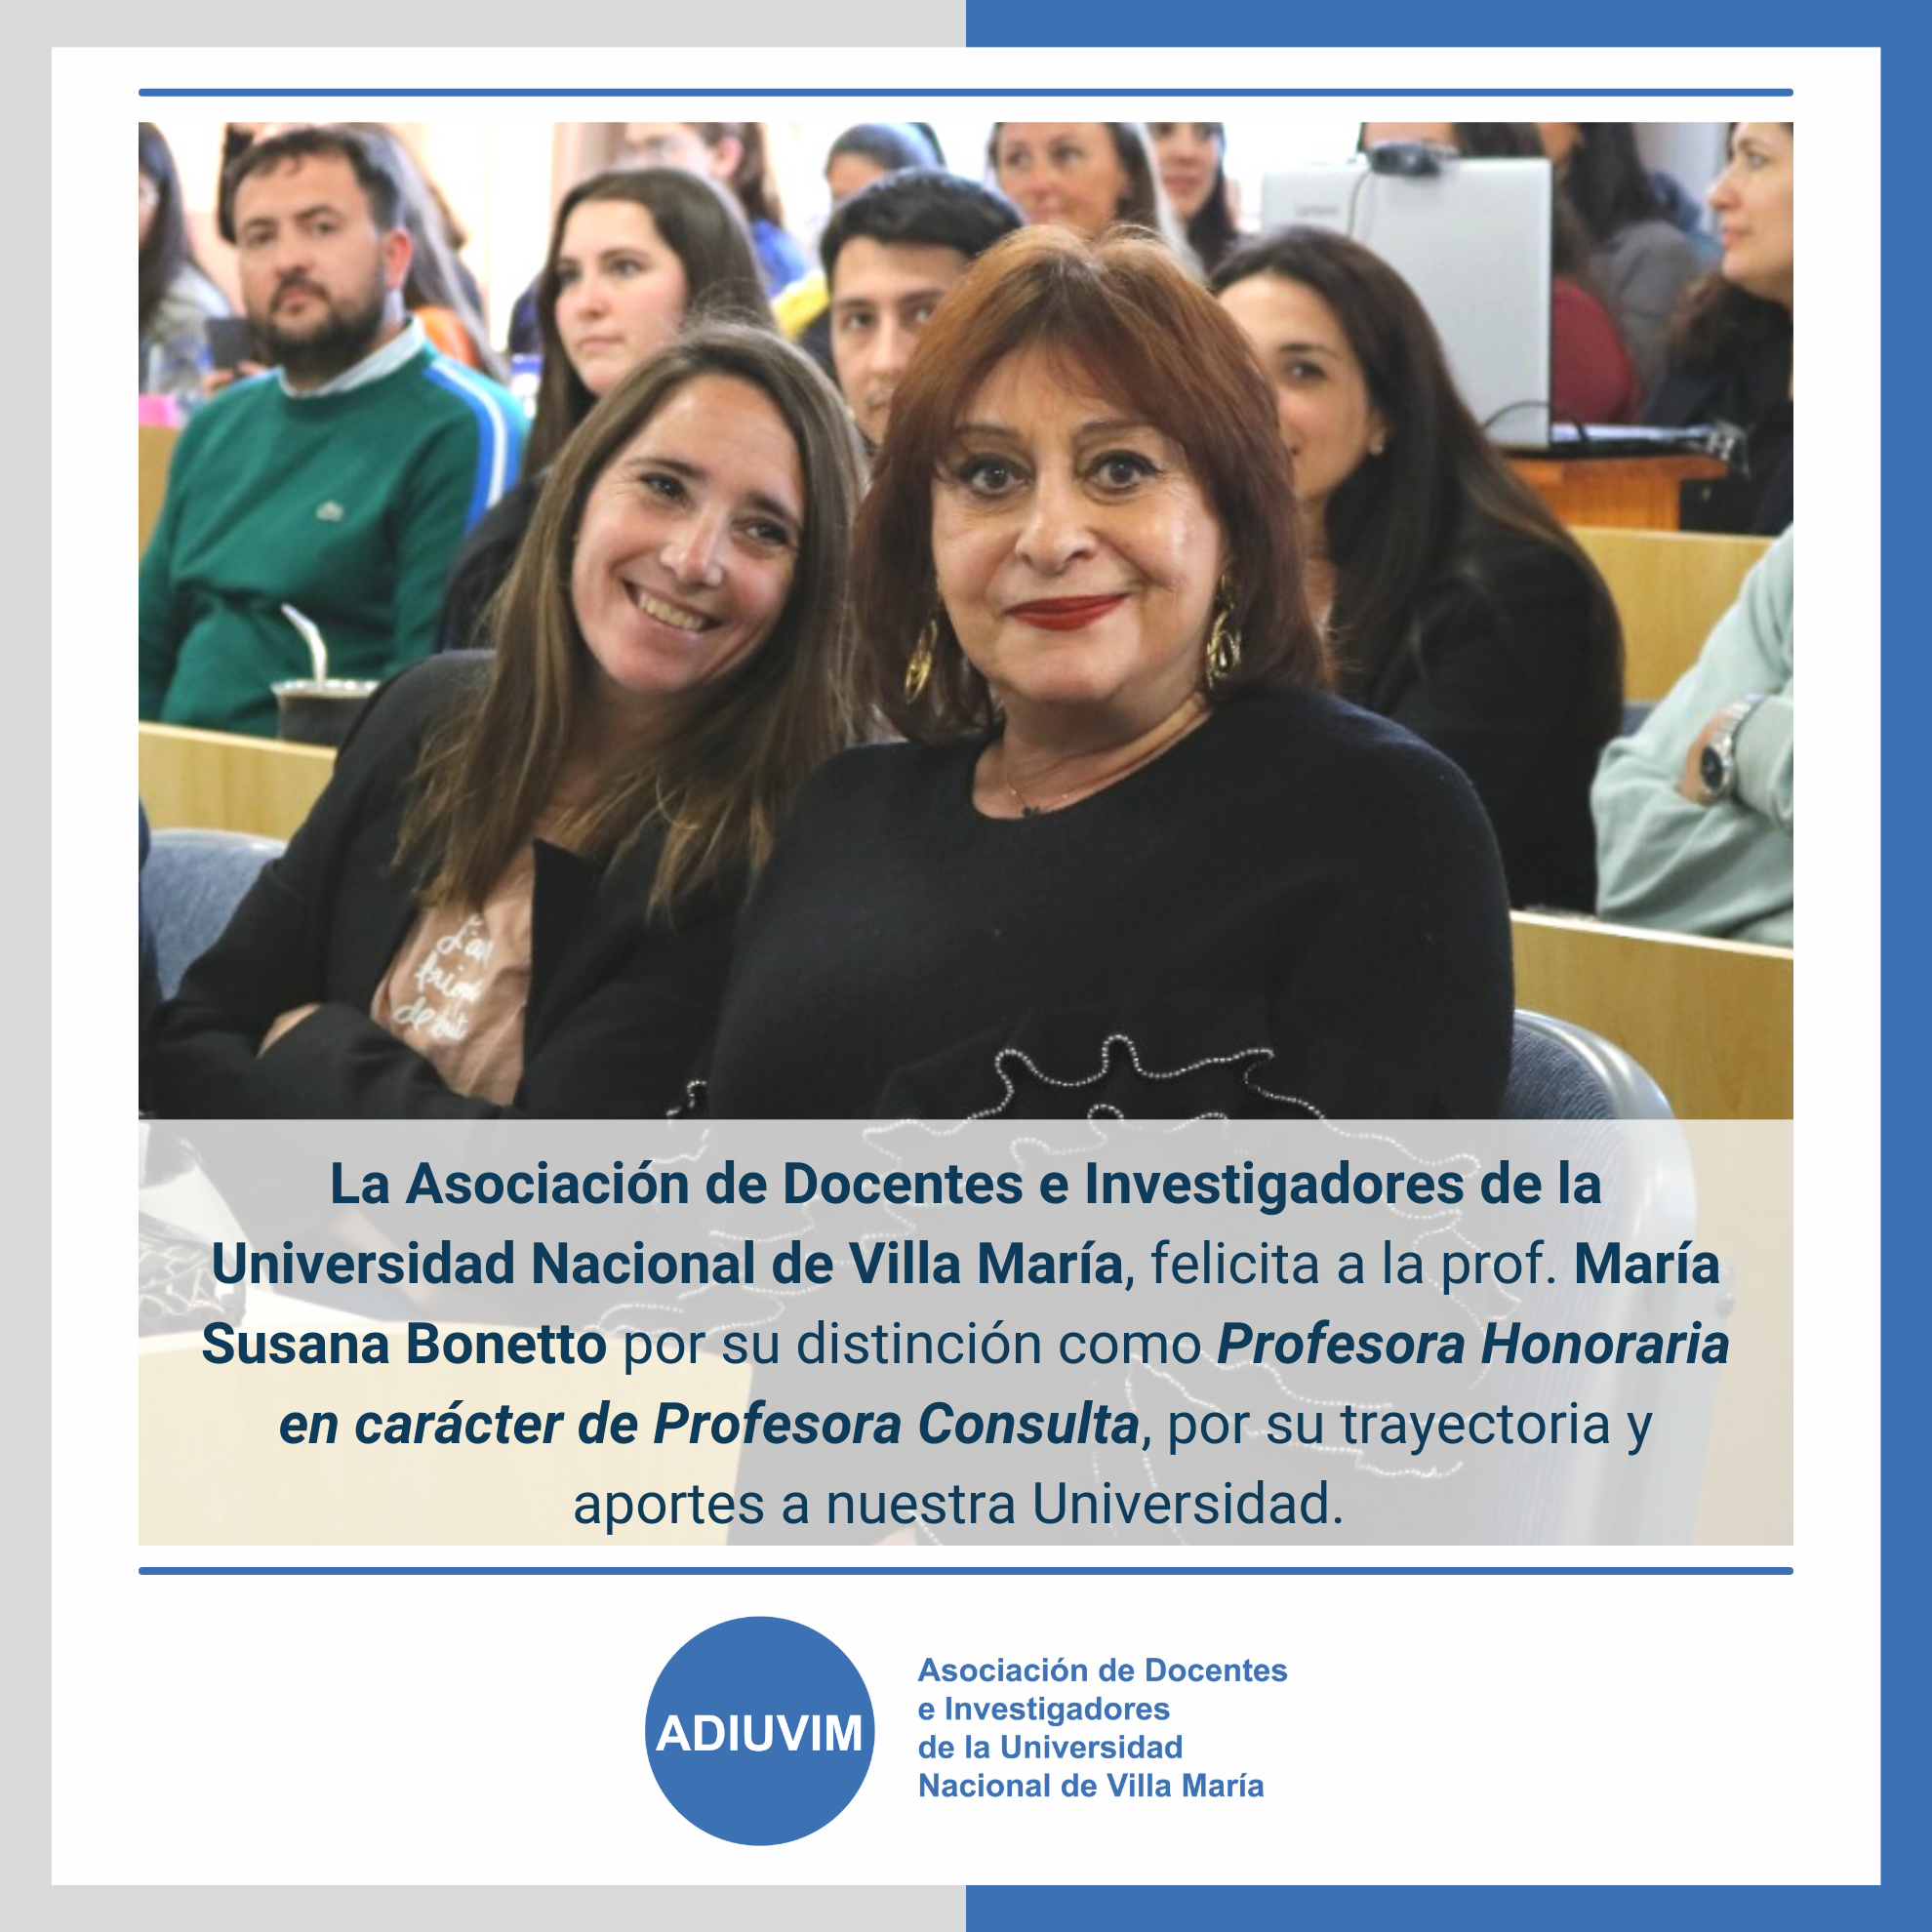 ¡Felicitamos a la Prof. María Susana Bonetto por su distinción como Profesora Honoraria en carácter de Profesora Consulta de la UNVM!